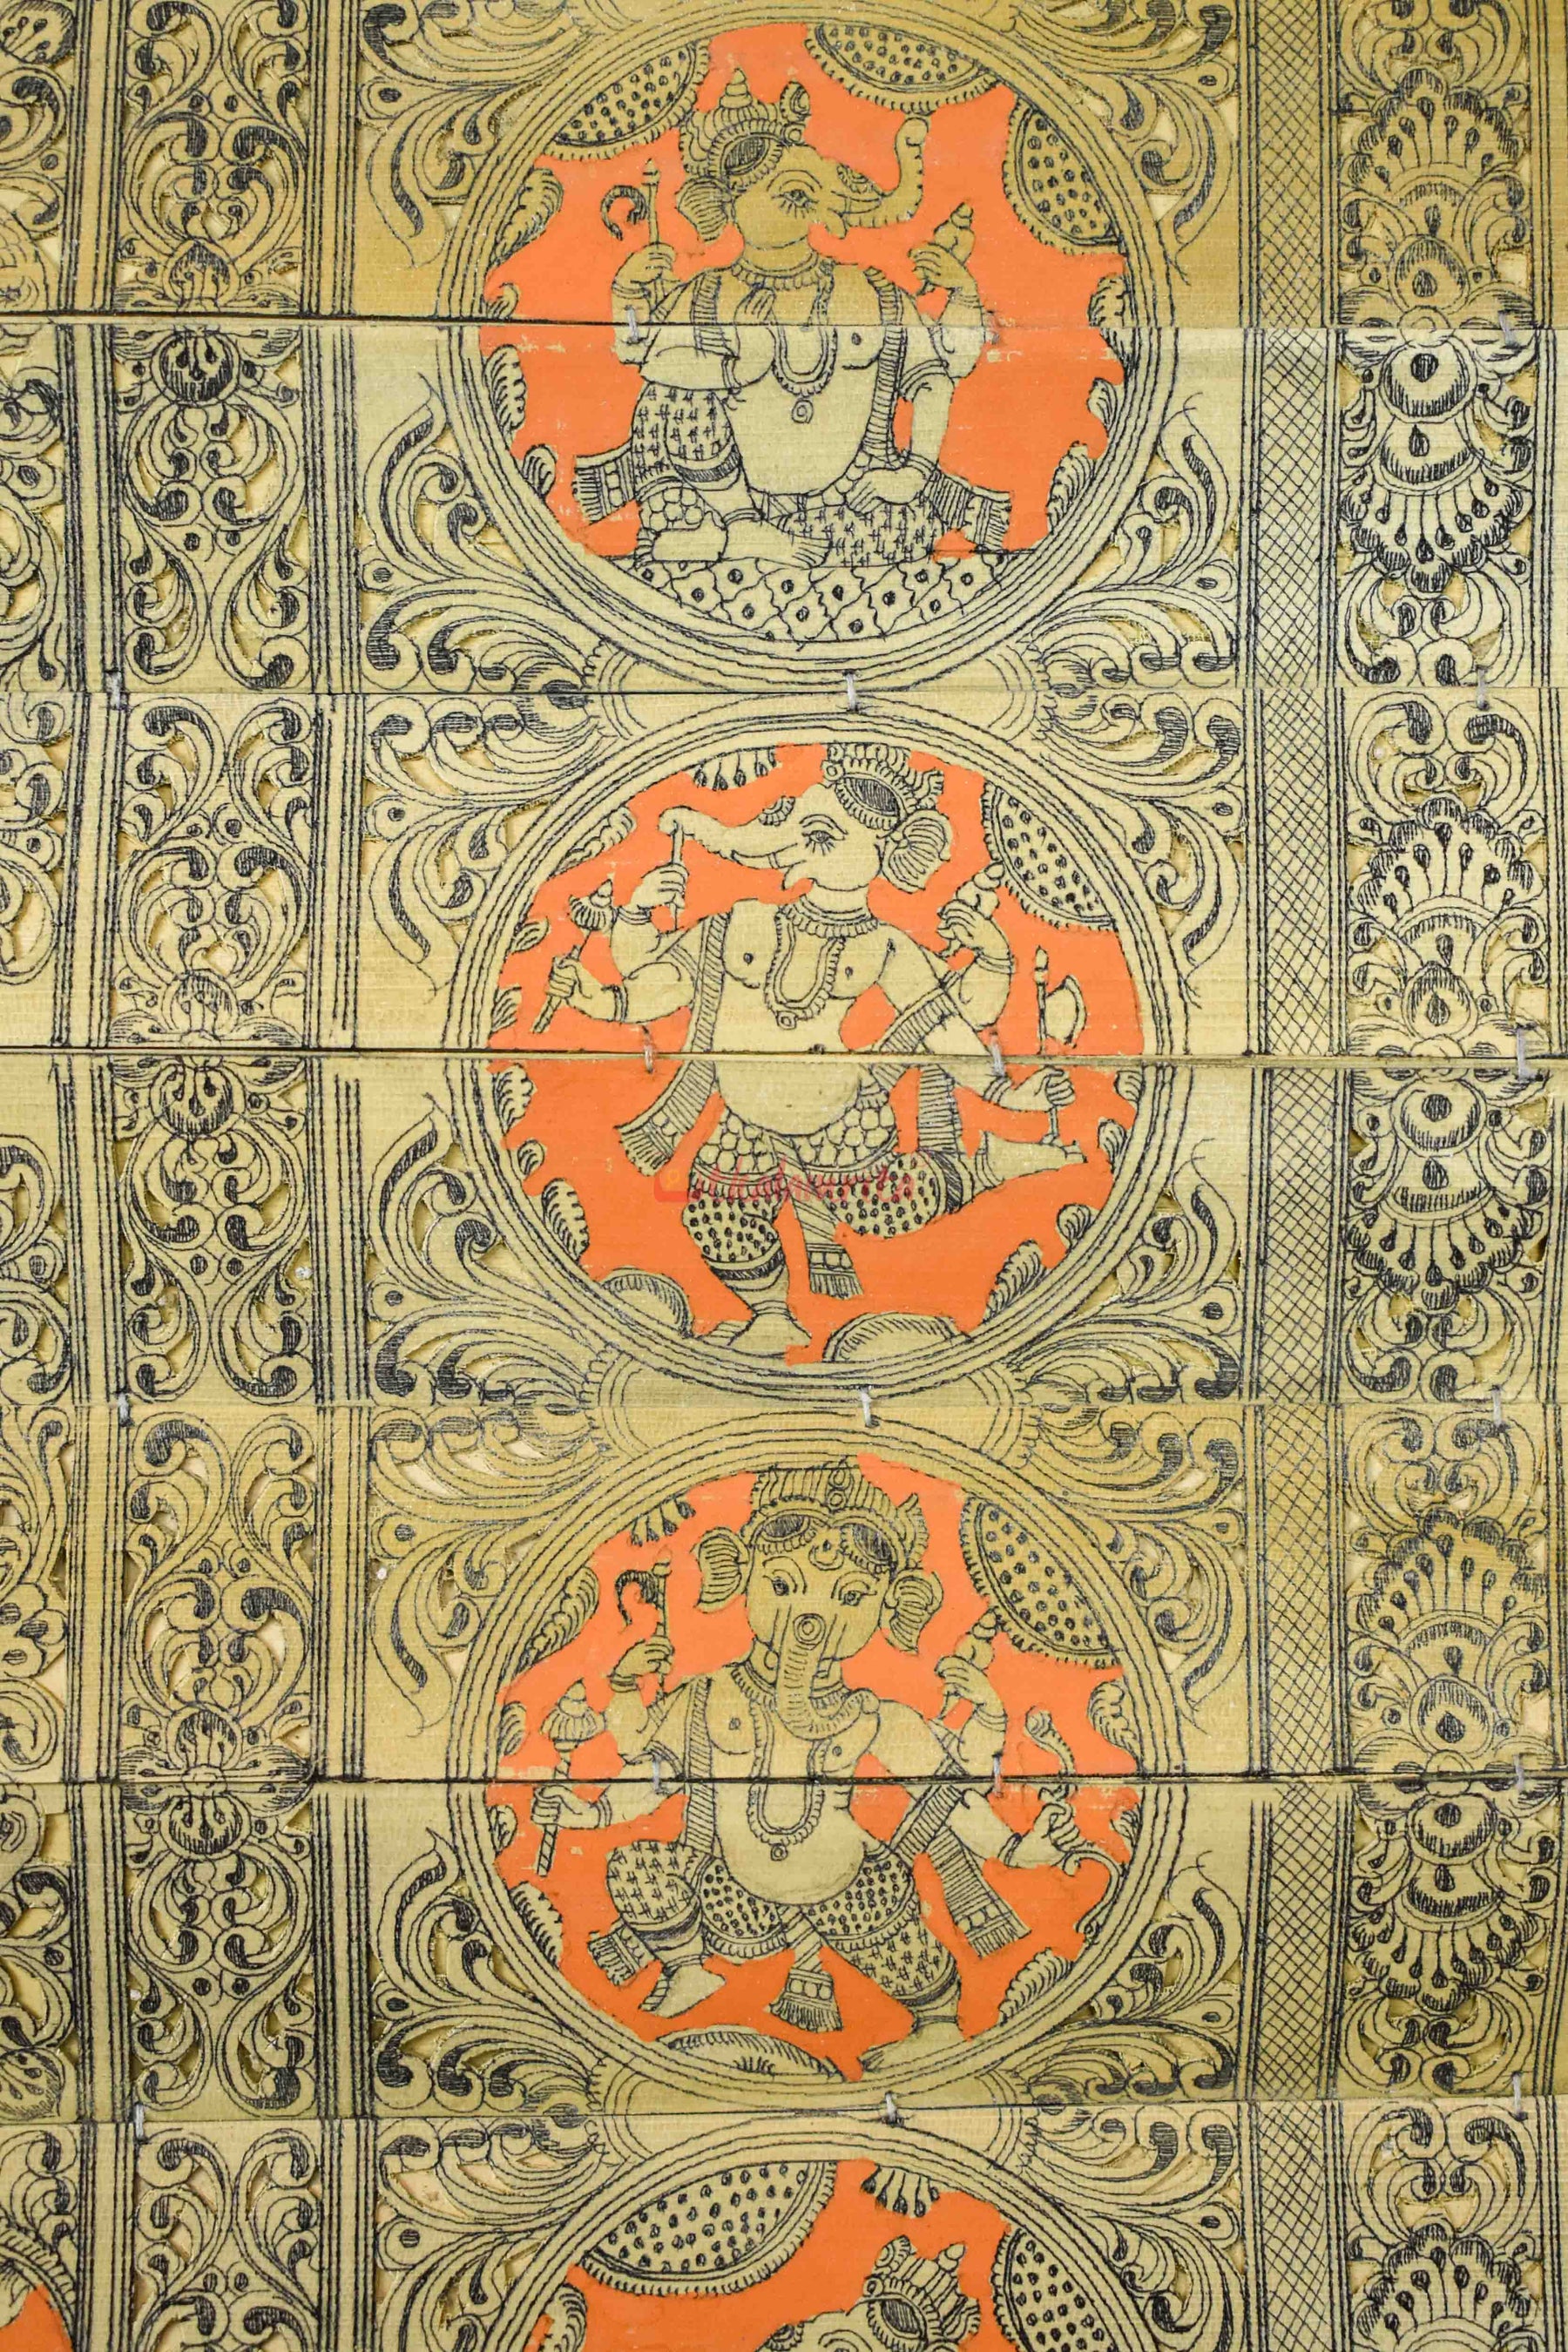 Lord Ganesha Avatars (Talapatra Chitra) (18*30 Inches)